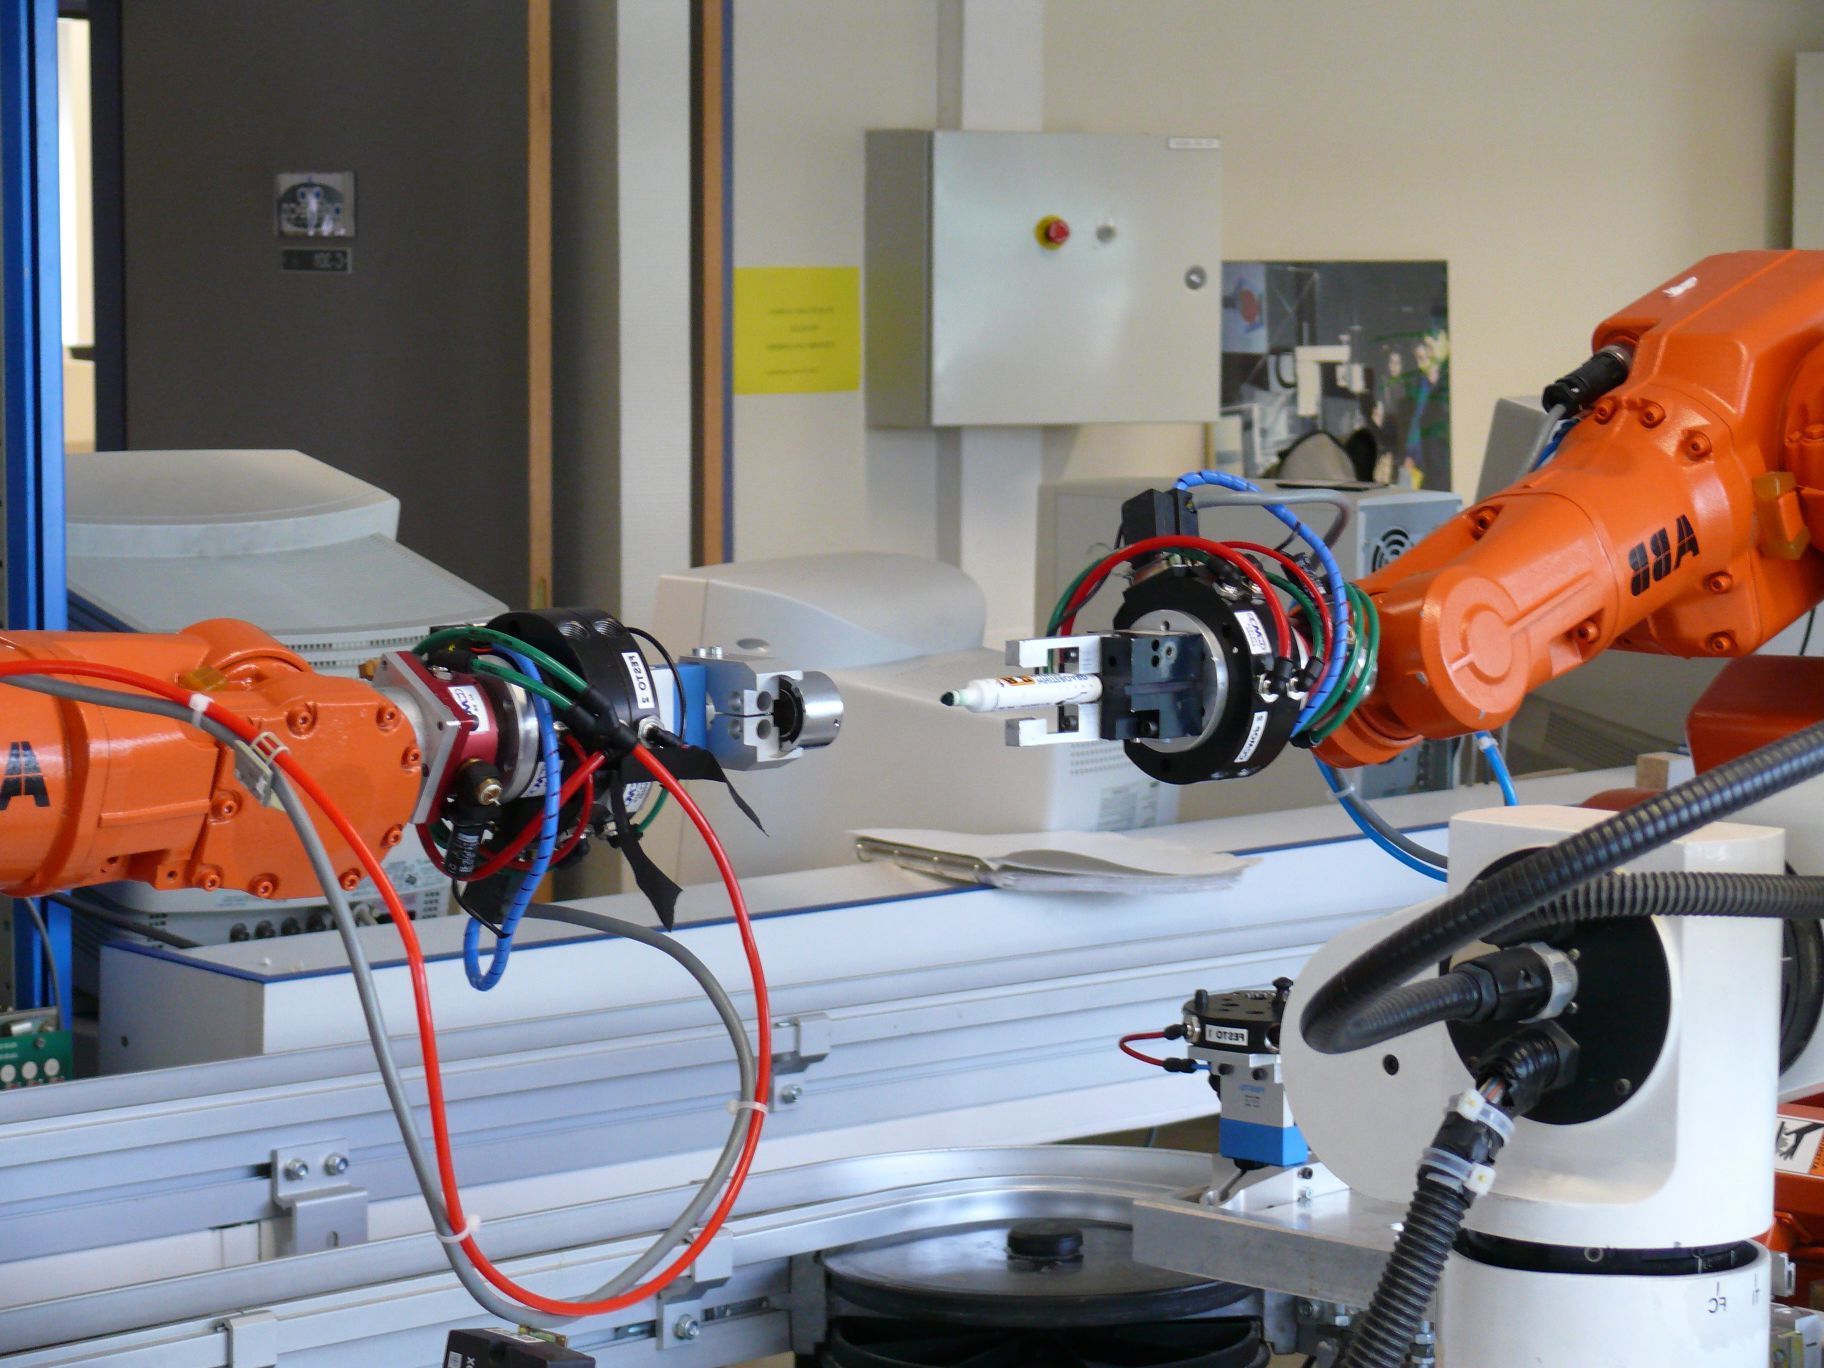 Automacin industrial a travs de robots.